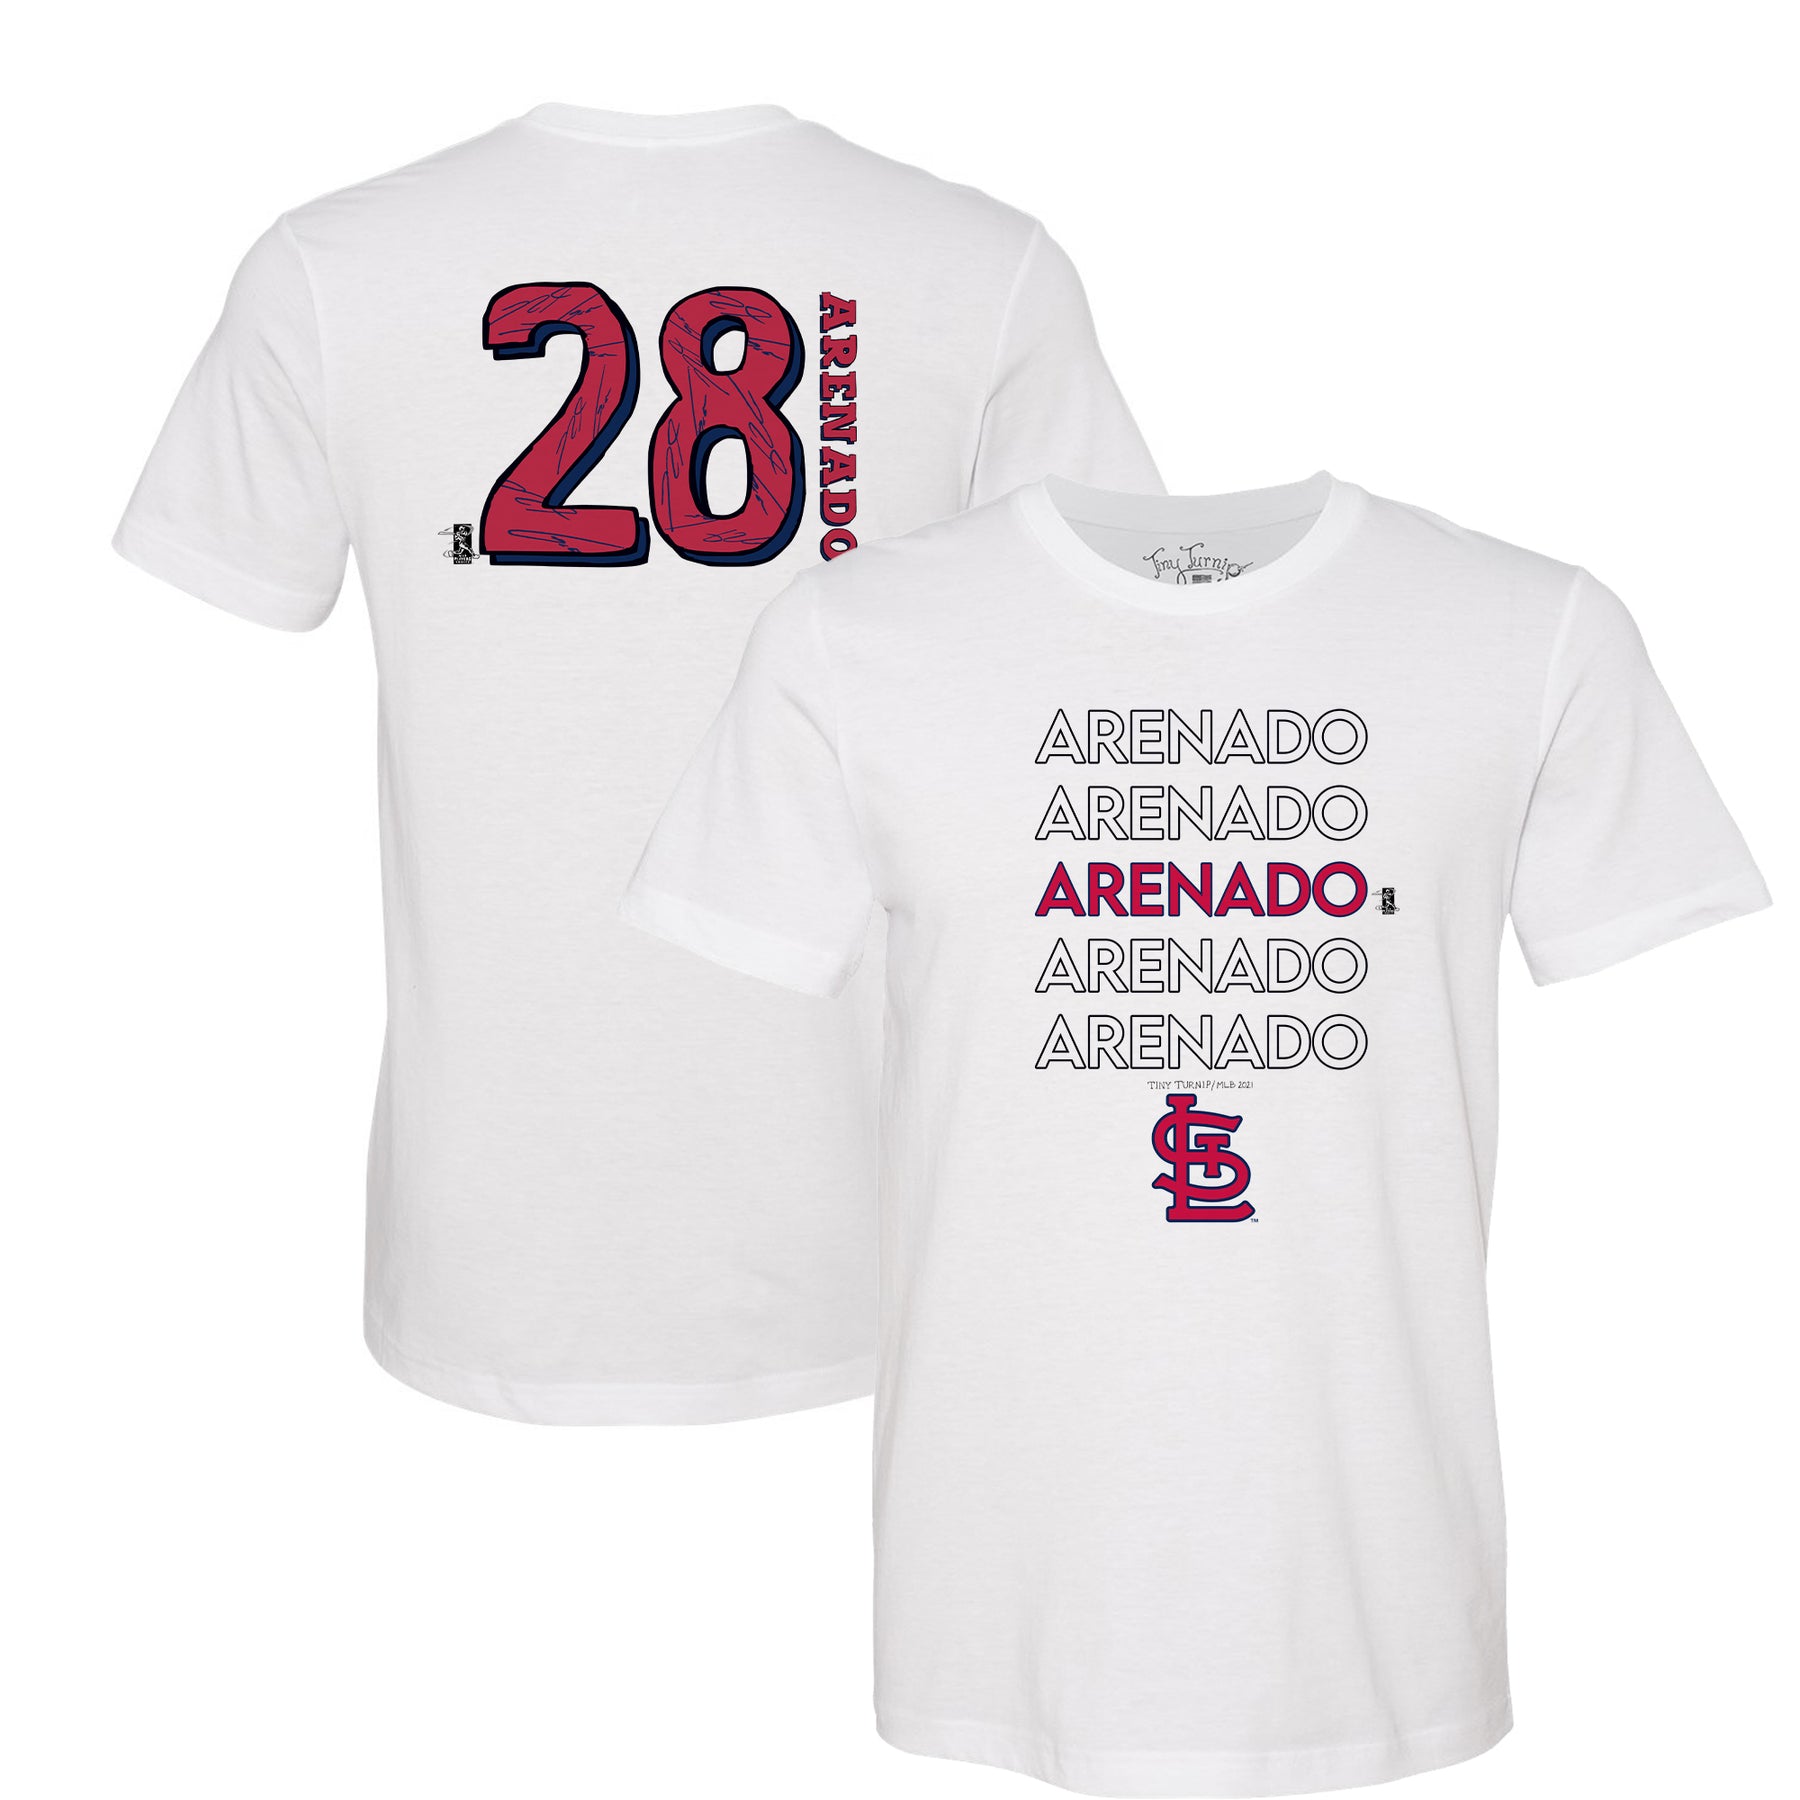 Official Nolan Arenado Jersey, Nolan Arenado Shirts, Baseball Apparel, Nolan  Arenado Gear